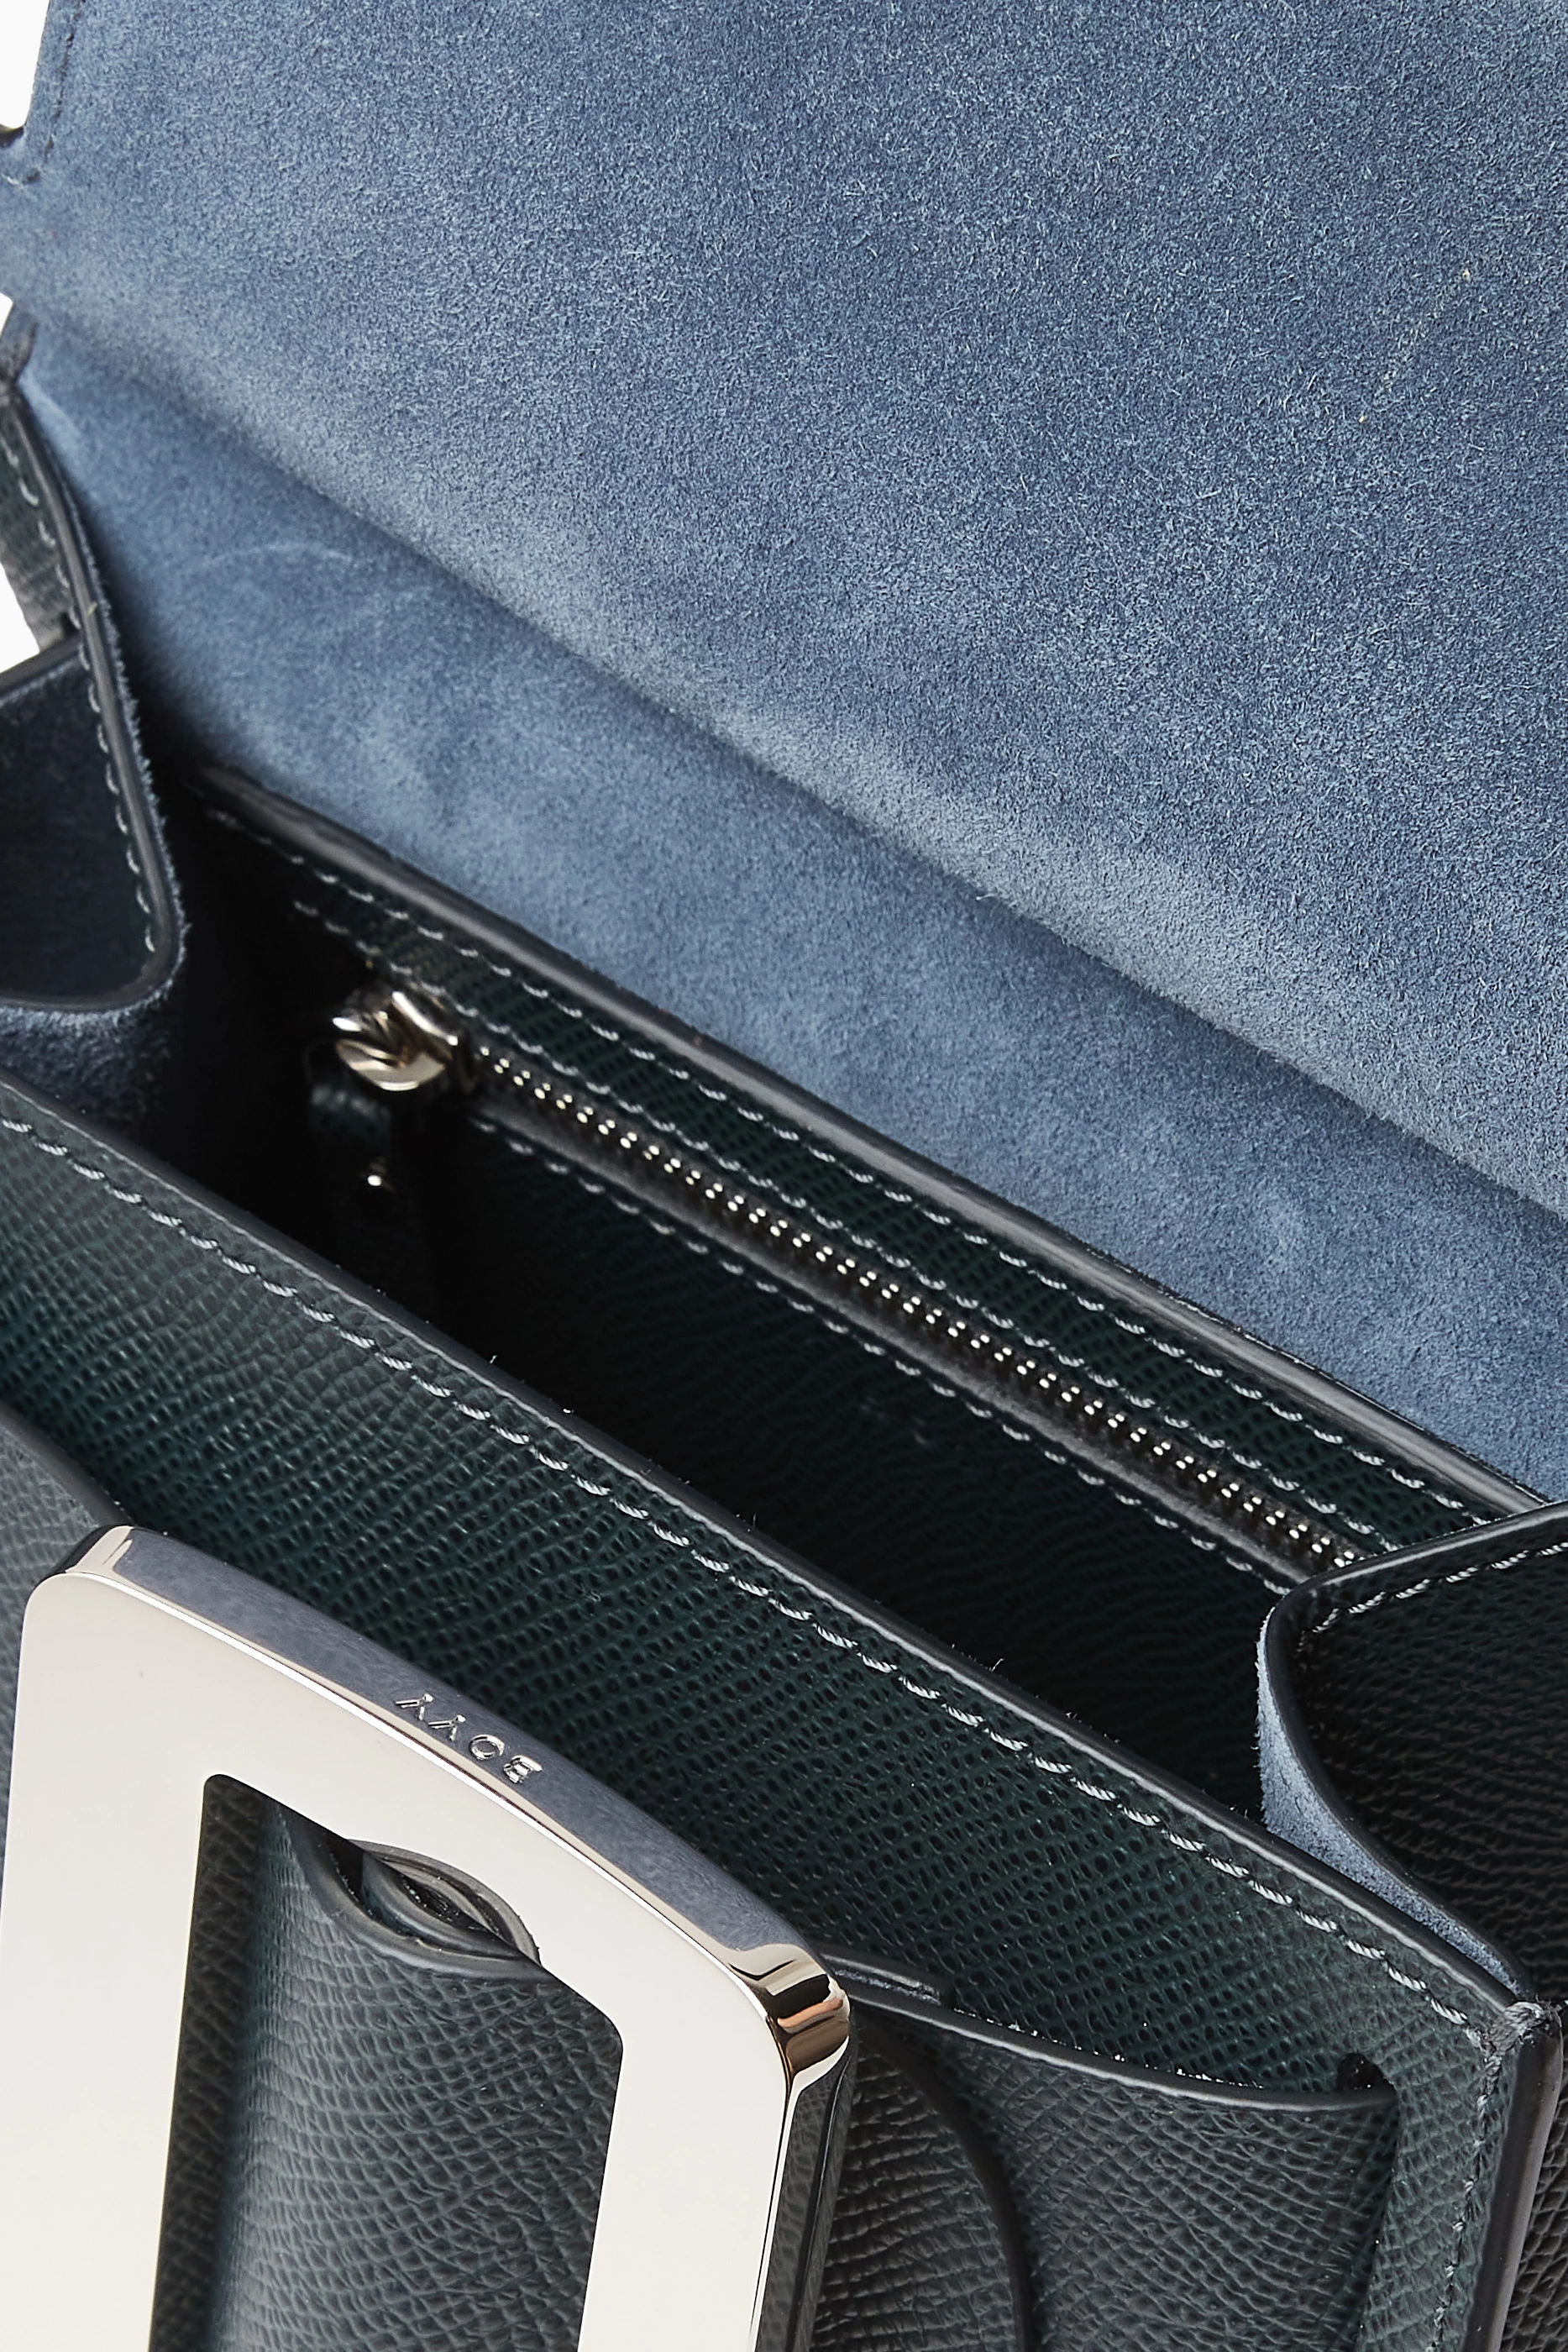 Karl 19 epsom leather top handle bag - Boyy - Women